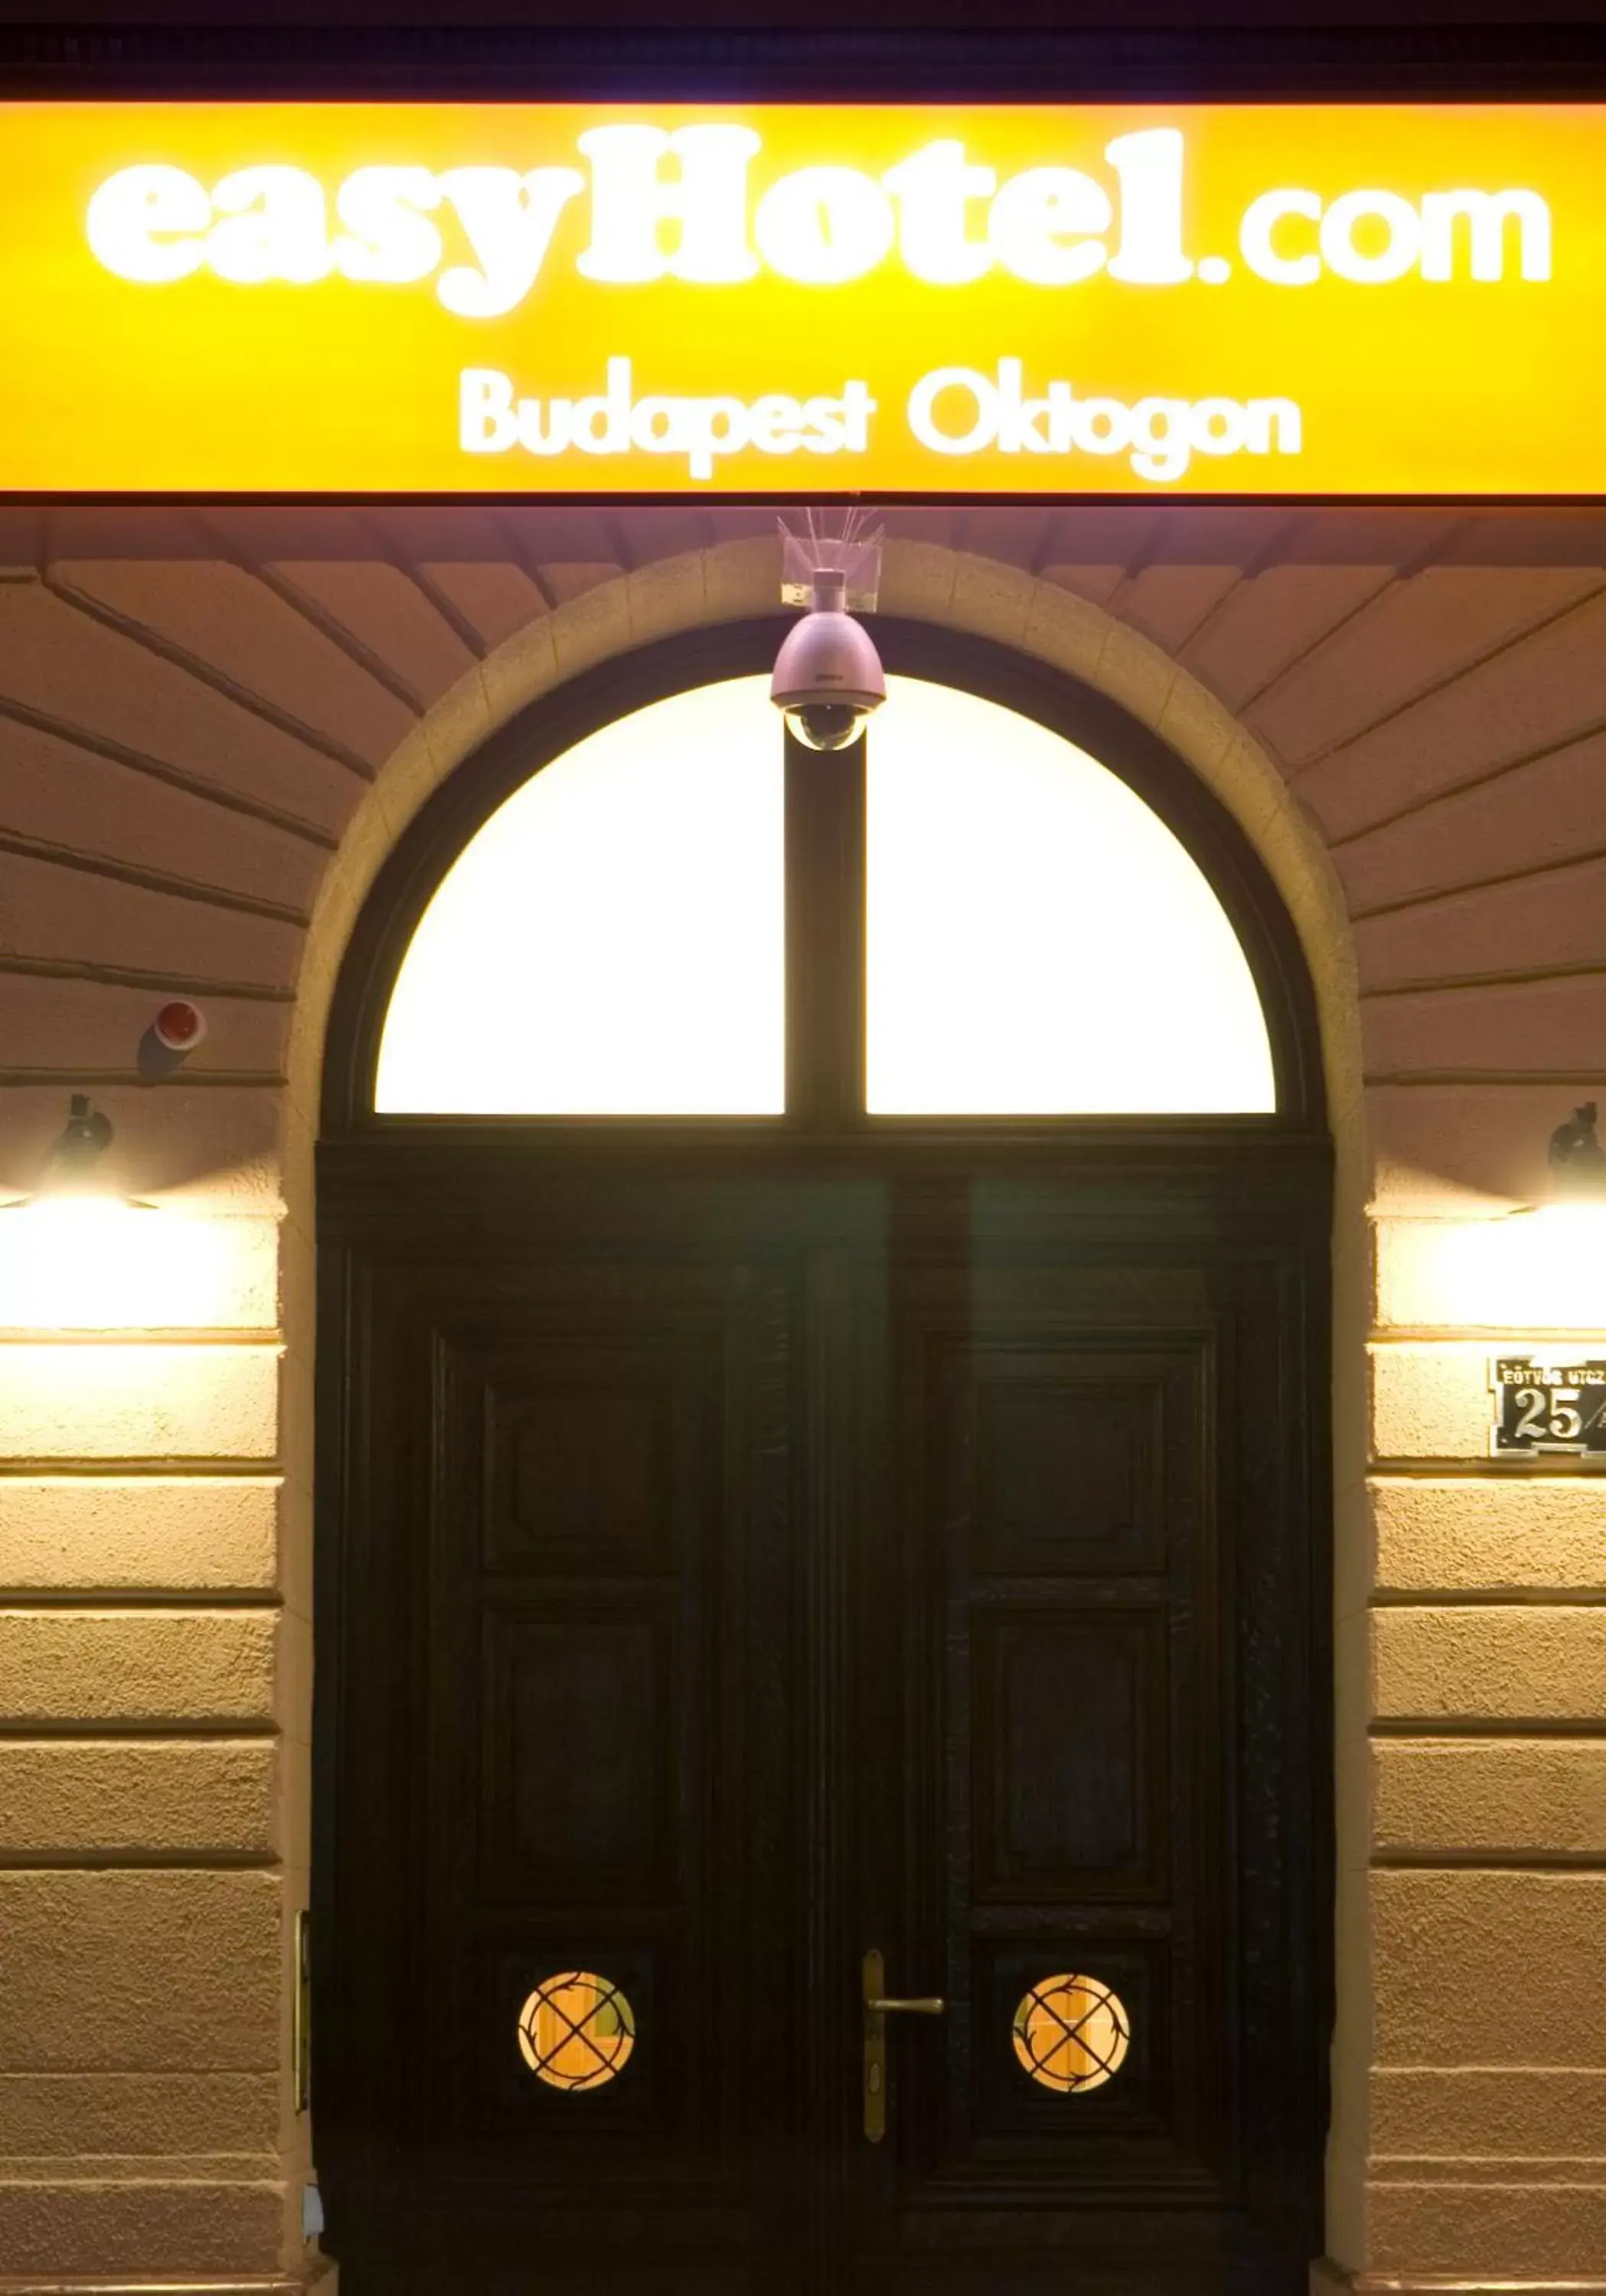 Facade/entrance in easyHotel Budapest Oktogon